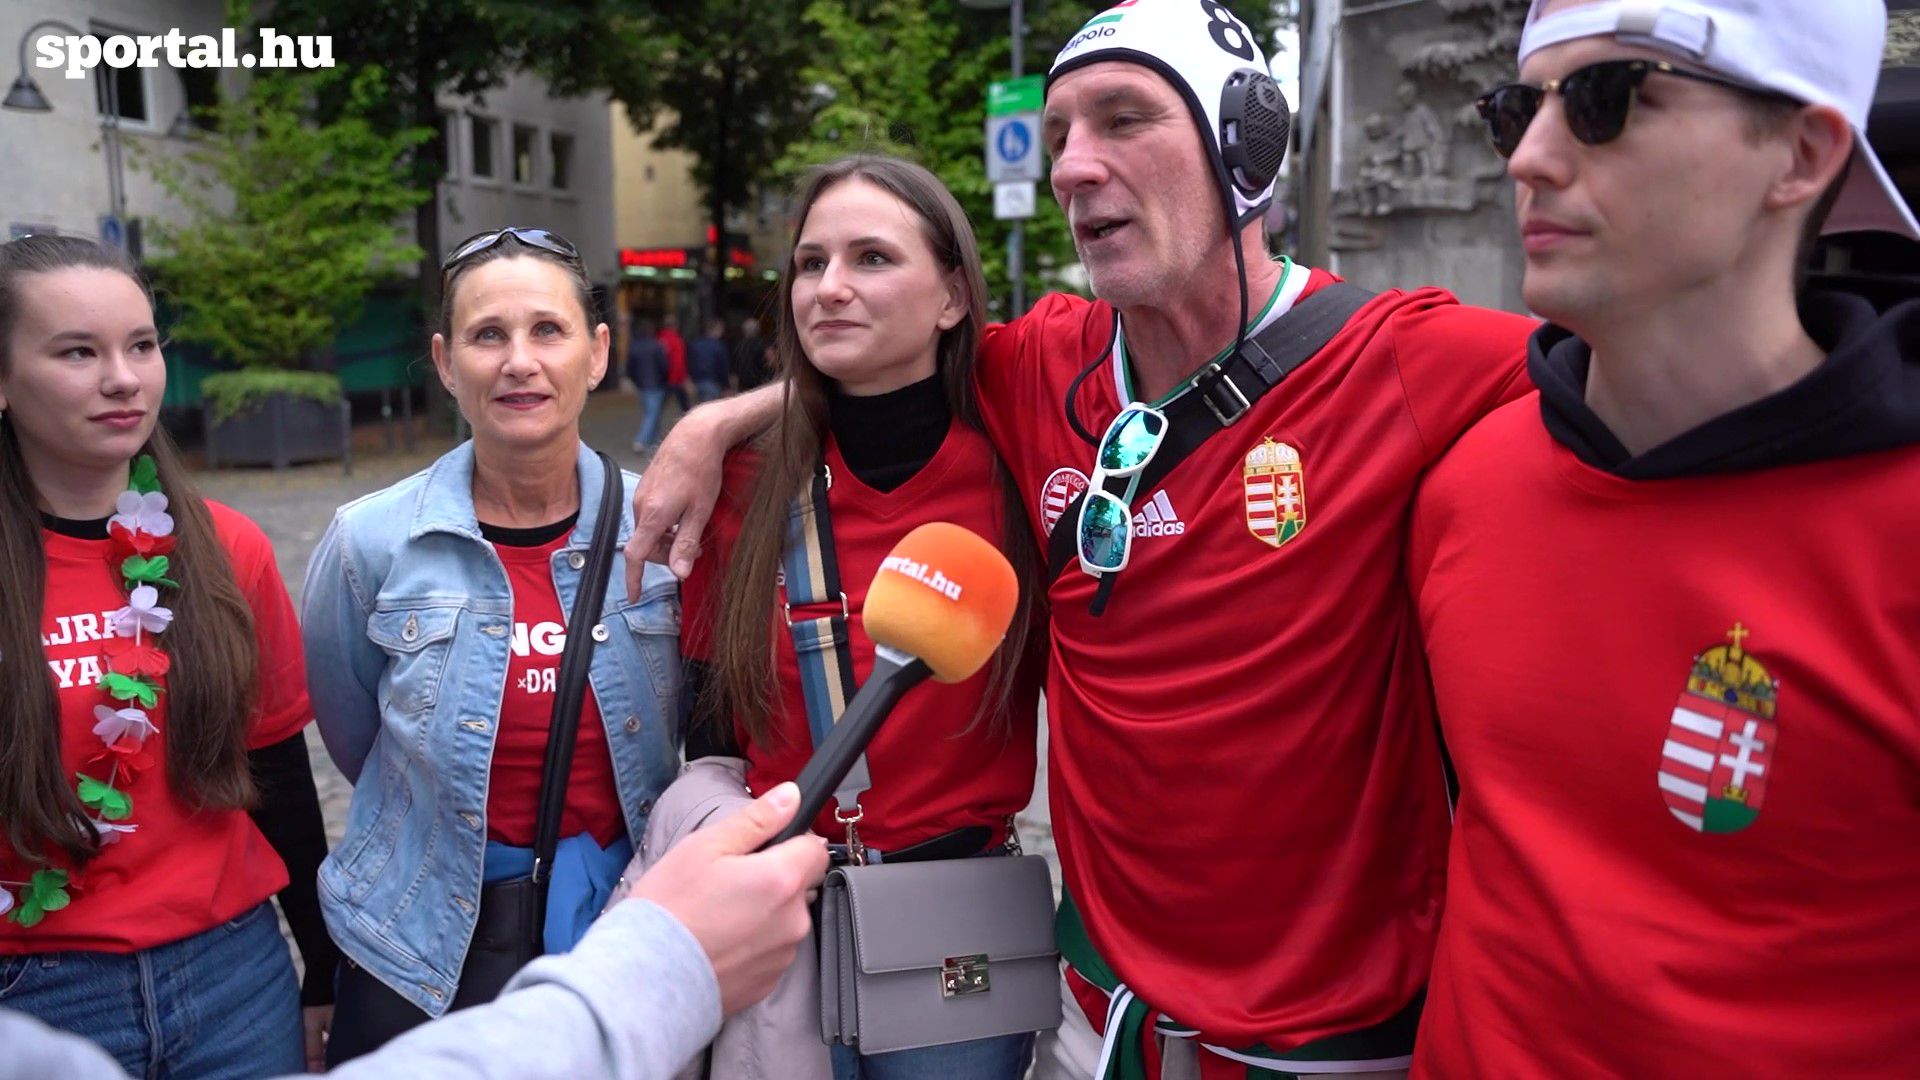 Győzelemre, továbbjutásra és nagy ünneplésre készülnek a magyar szurkolók Kölnben